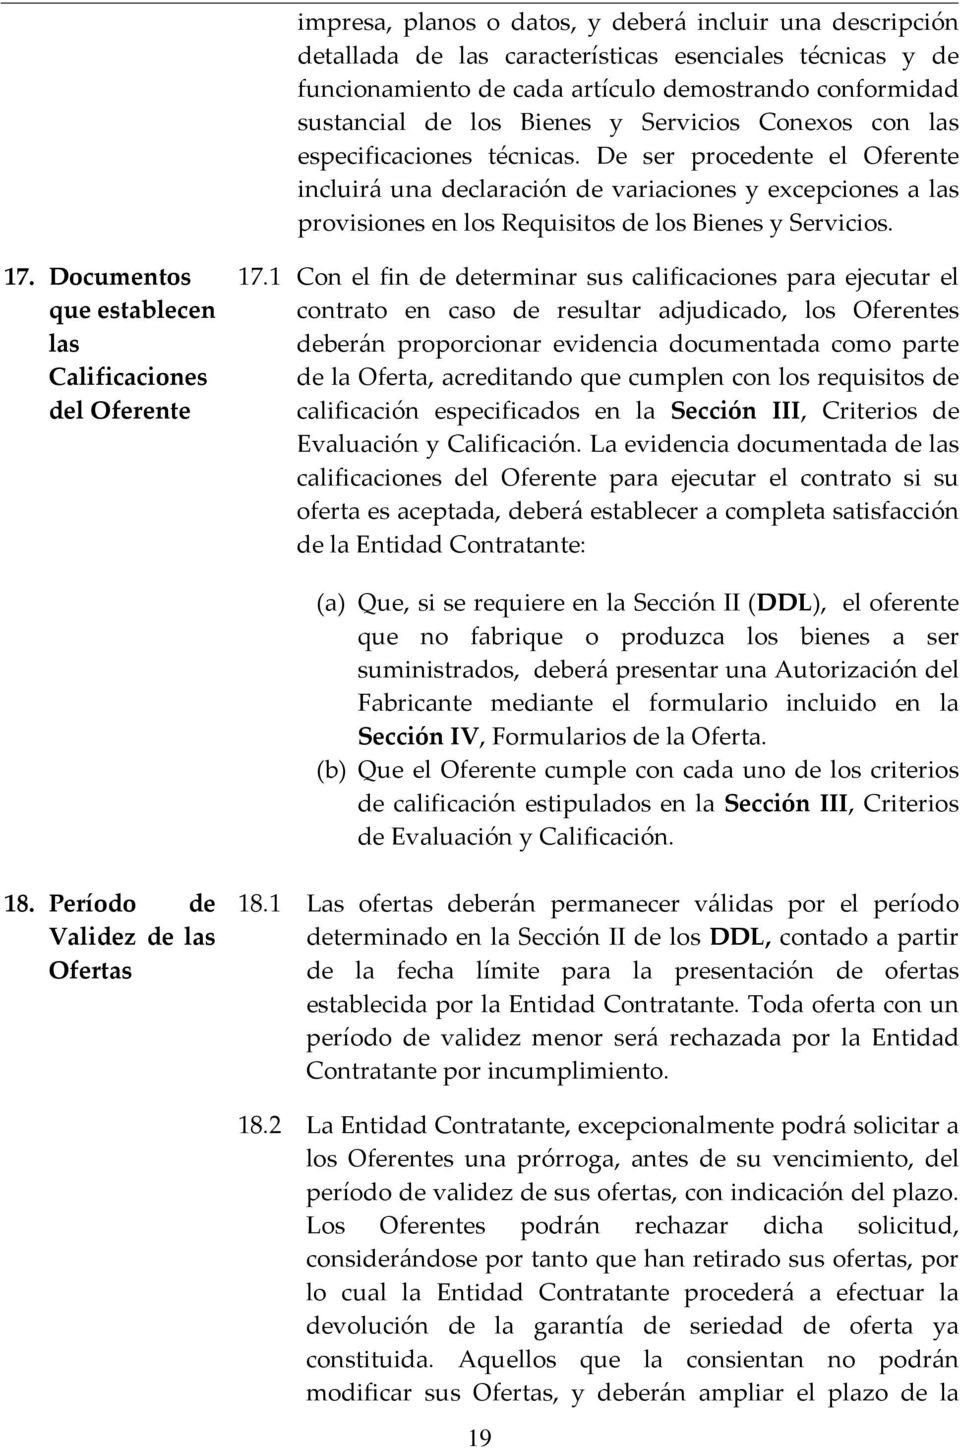 17. Documentos que establecen las Calificaciones del Oferente 17.